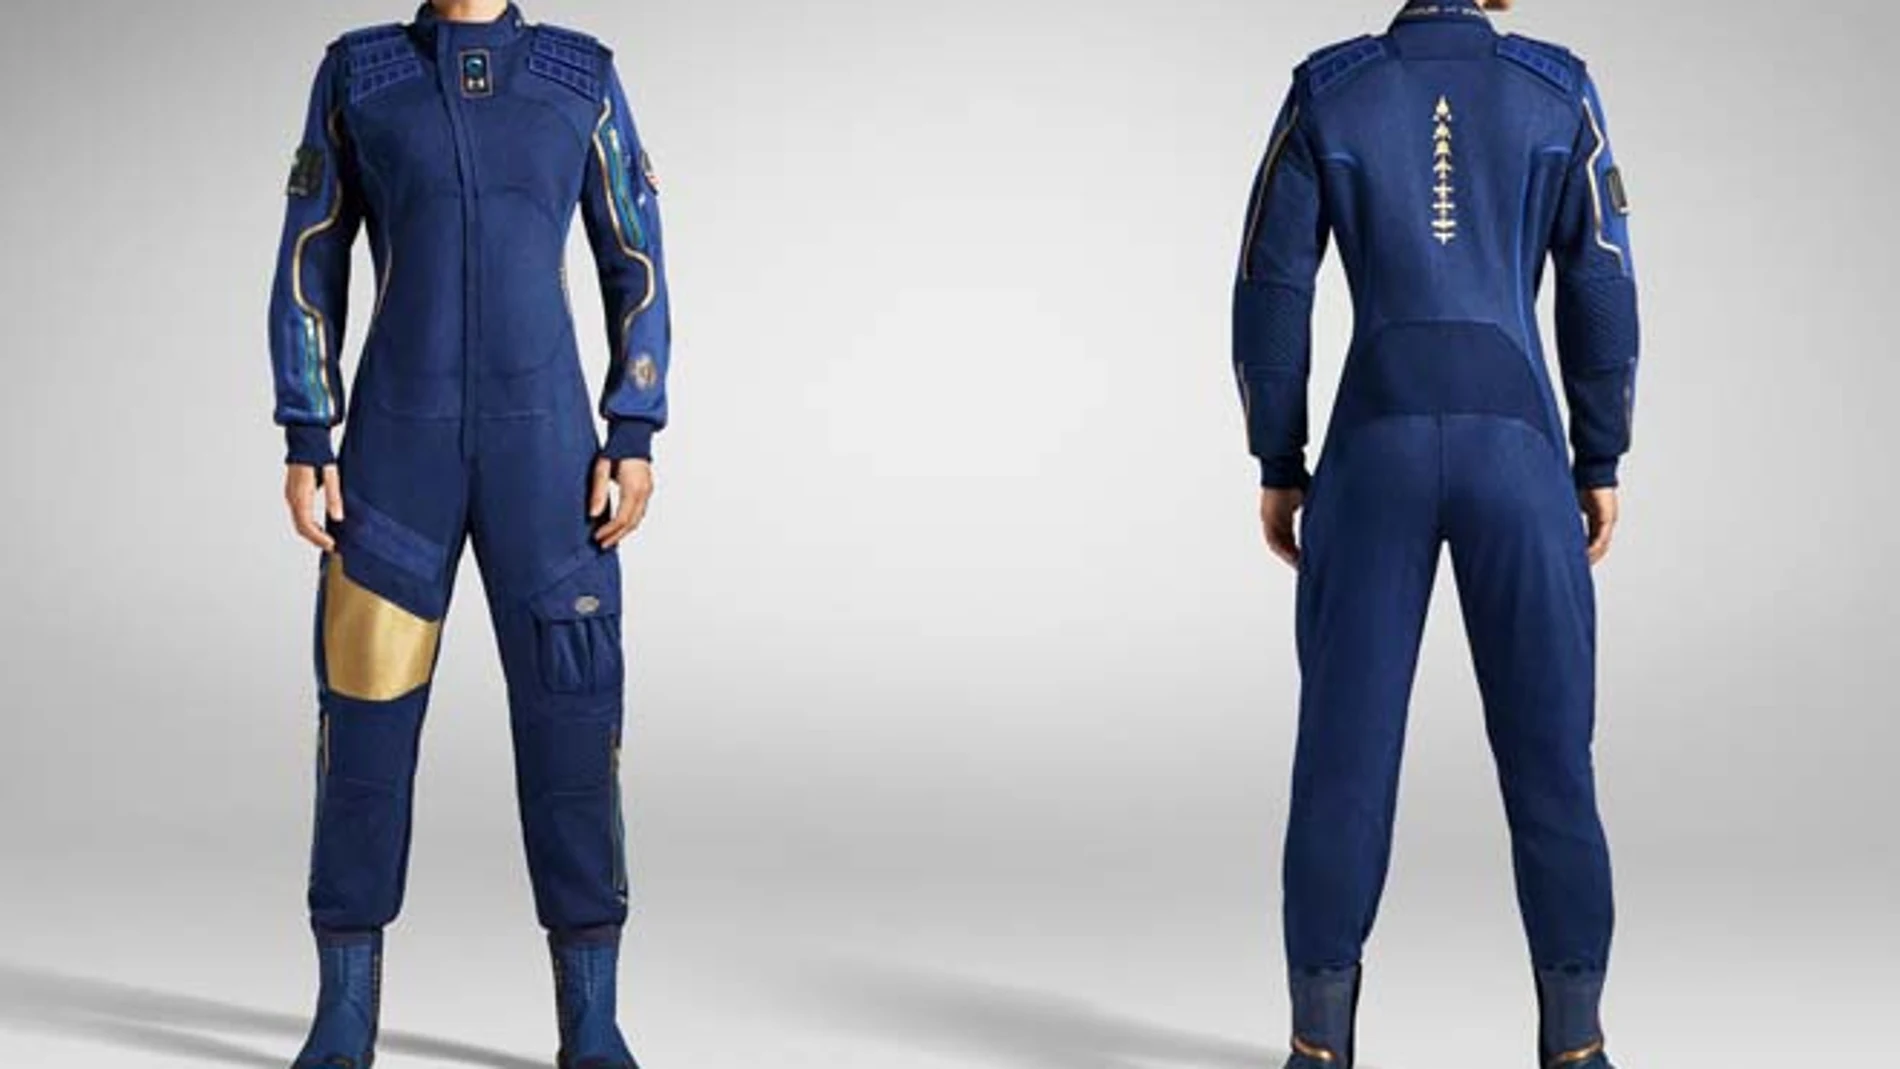 Los trajes para los vuelos espaciales tienen dos capas, la exterior en un tejido que se adapta a las formas del cuerpo en las articulaciones y otra interior más ajustada.